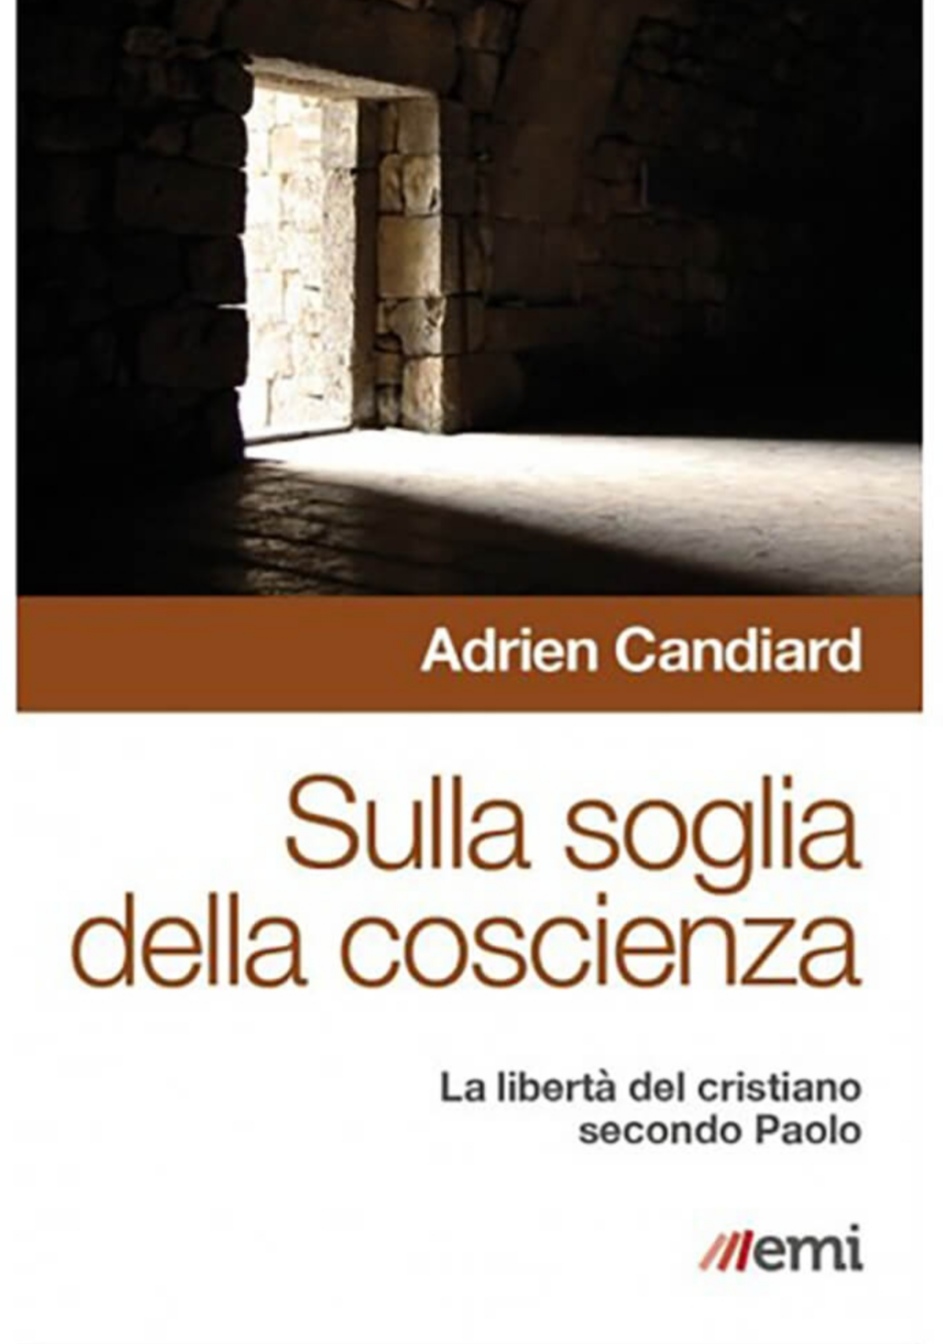 SULLA SOGLIA DELLA COSCIENZA - Adrien Candiard